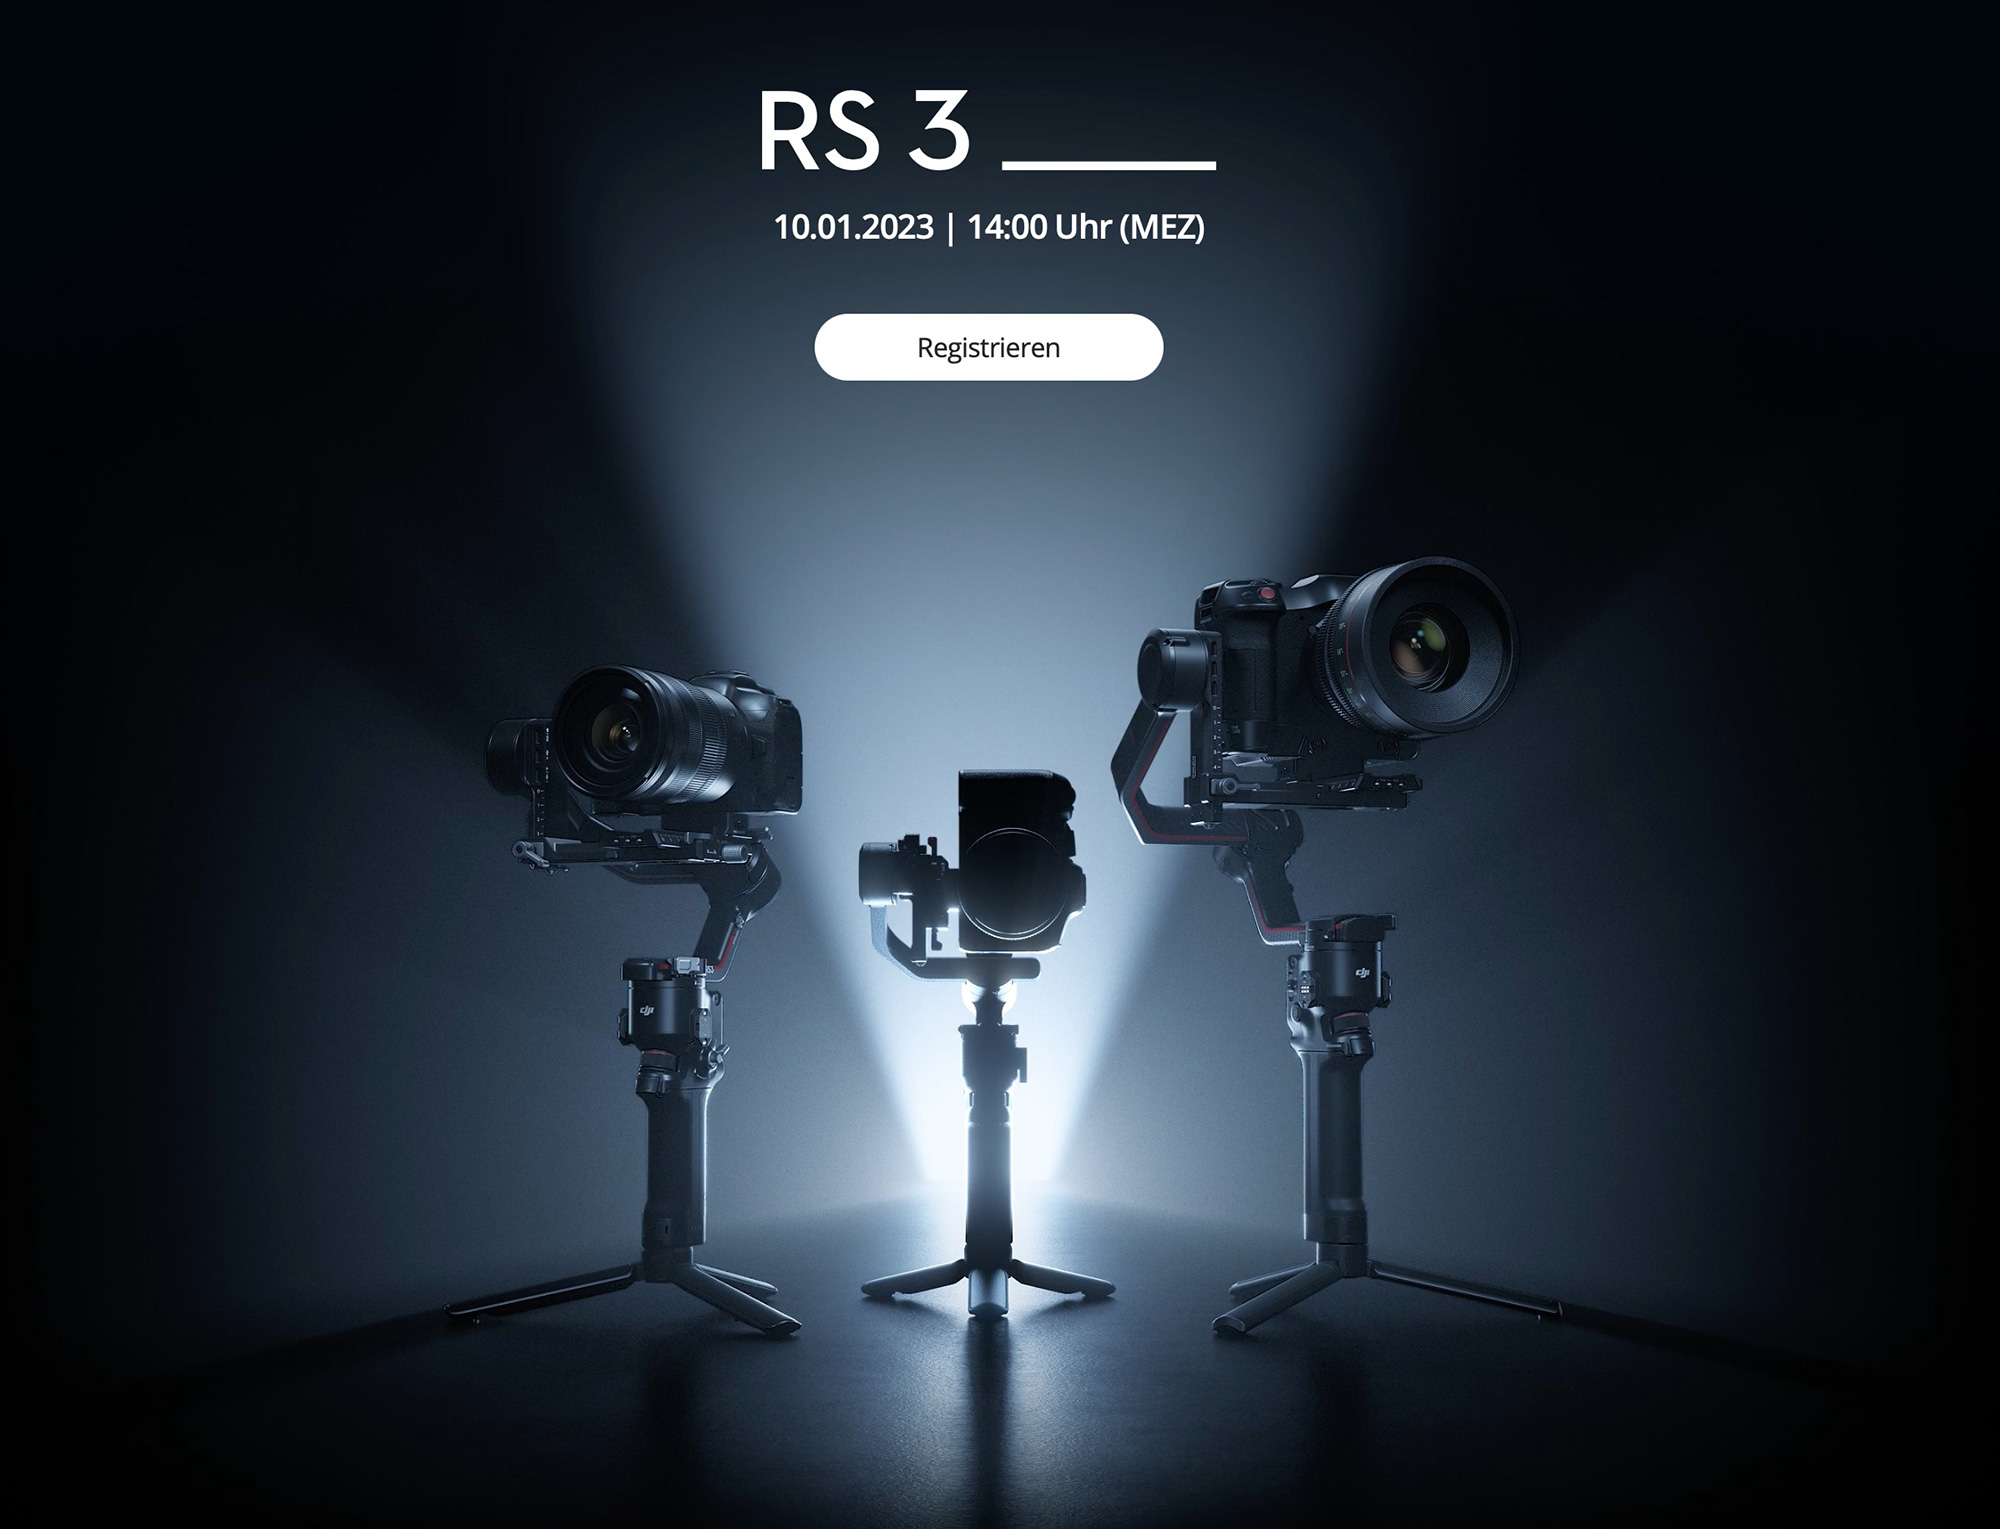 Slashcam News : New DJI RS3 gimbal on the way?